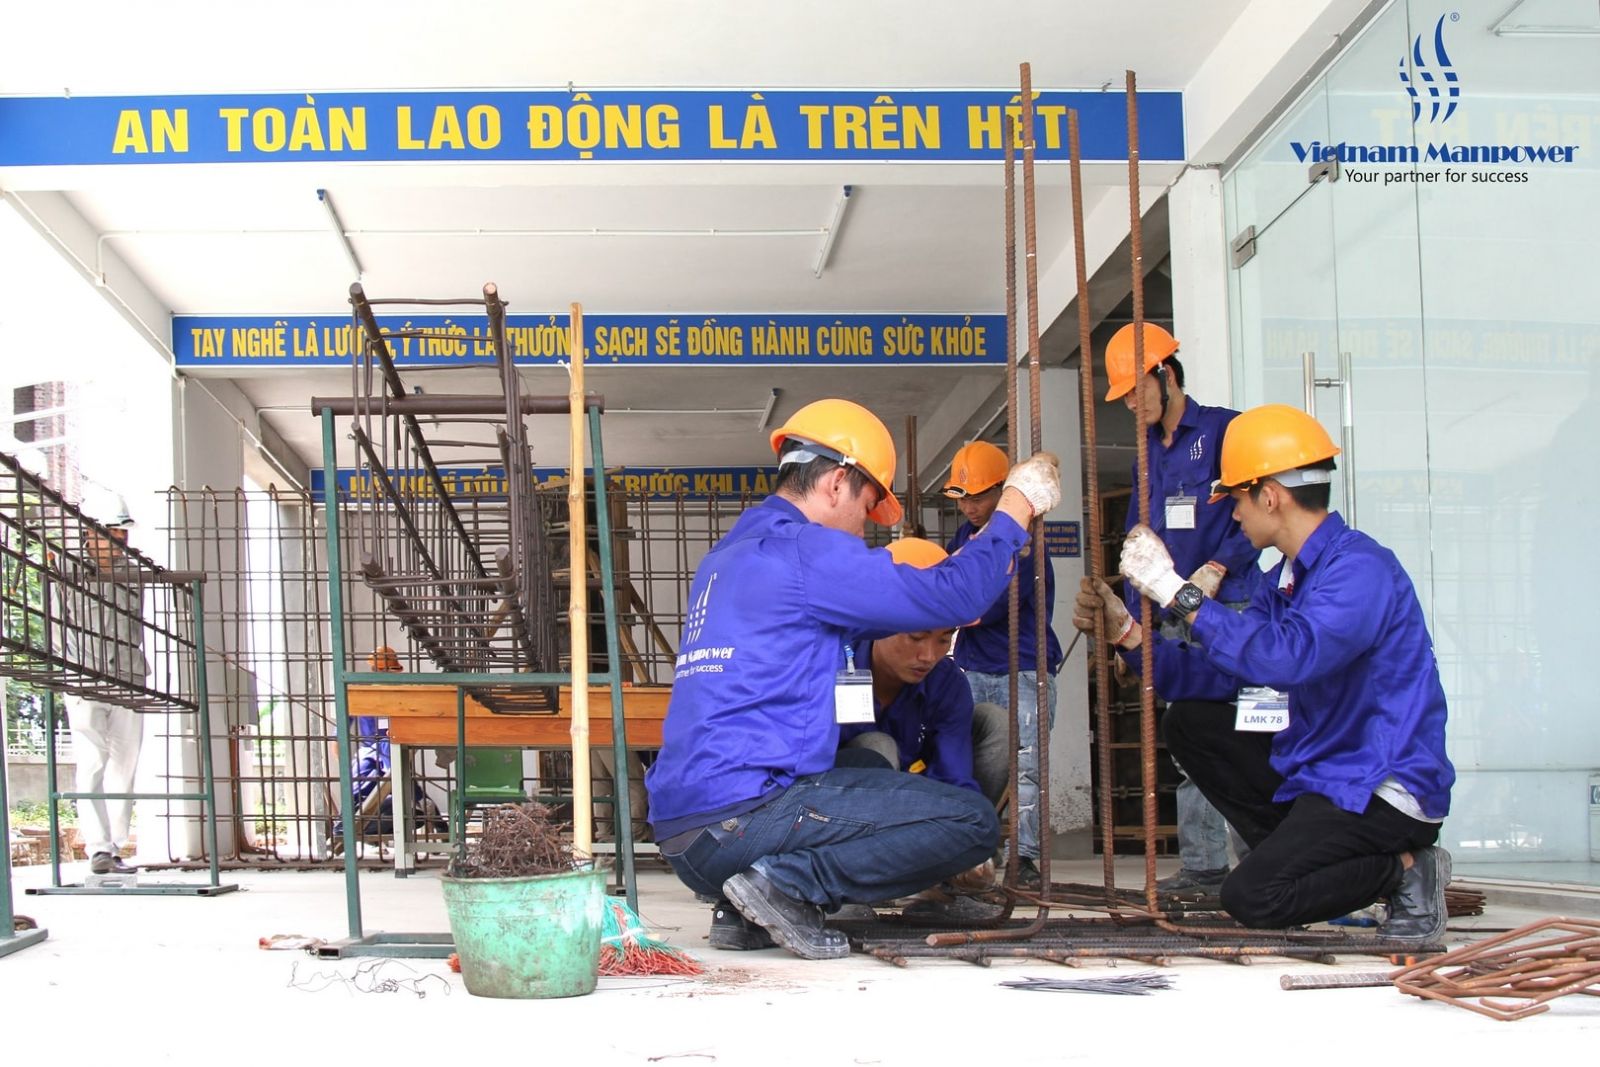 التعاون الثاني بين Vietnam Manpower-LMK Vietnam. و JSC و COLO CONSTRUCTION SRL في رومانيا.